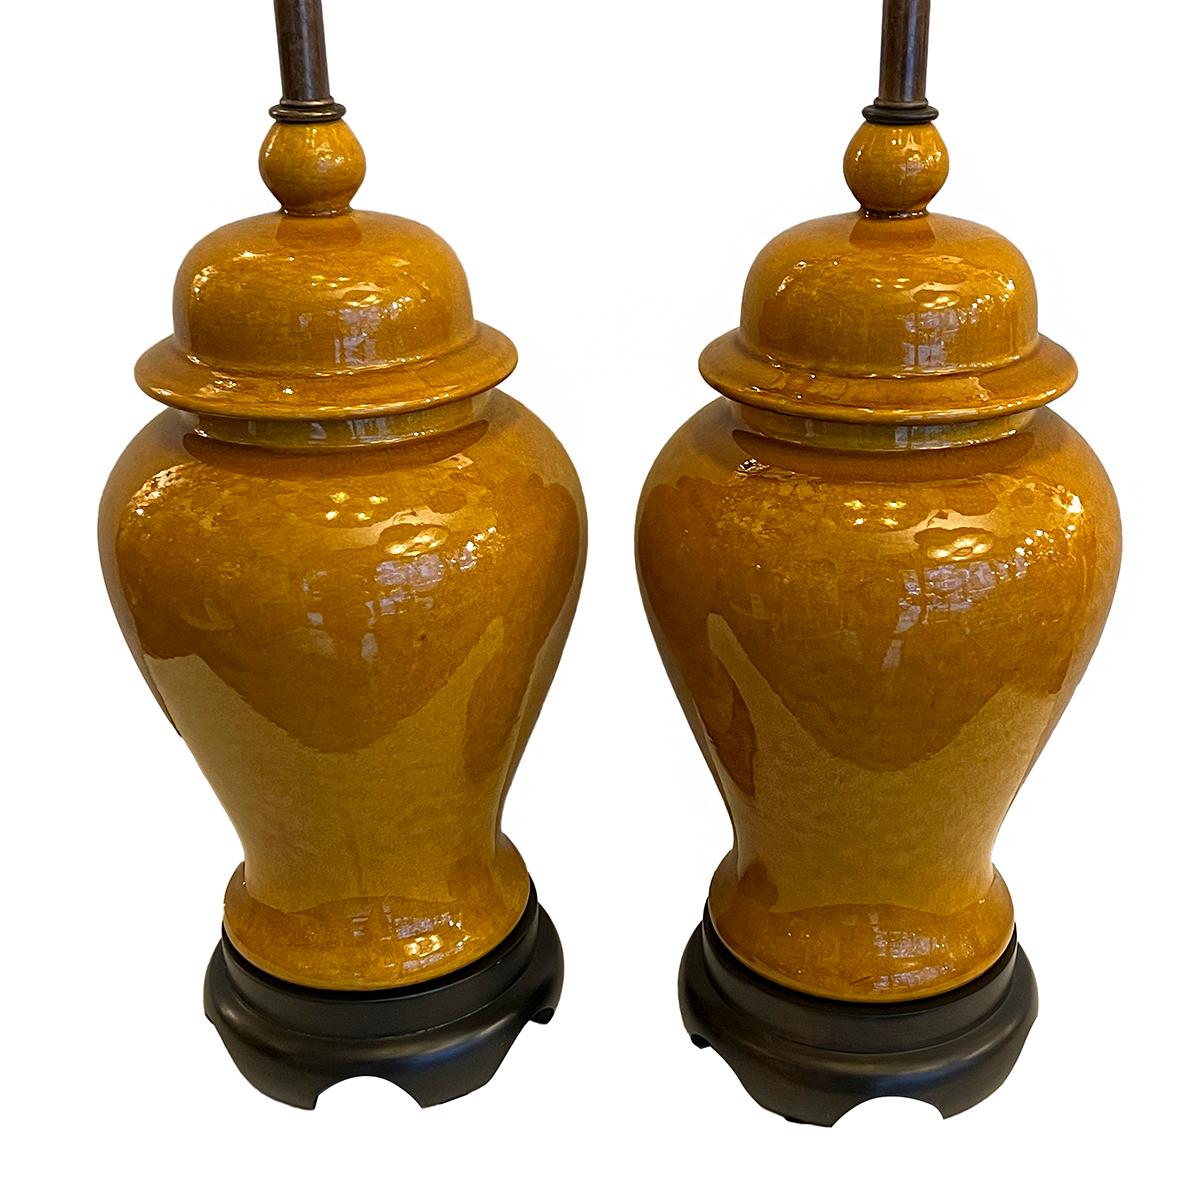 Paire de lampes en porcelaine ocre vintage française des années 1940 montées sur des bases en bois.

Mesures :
Hauteur du corps : 18 ?
Diamètre : 8,25 pouces.